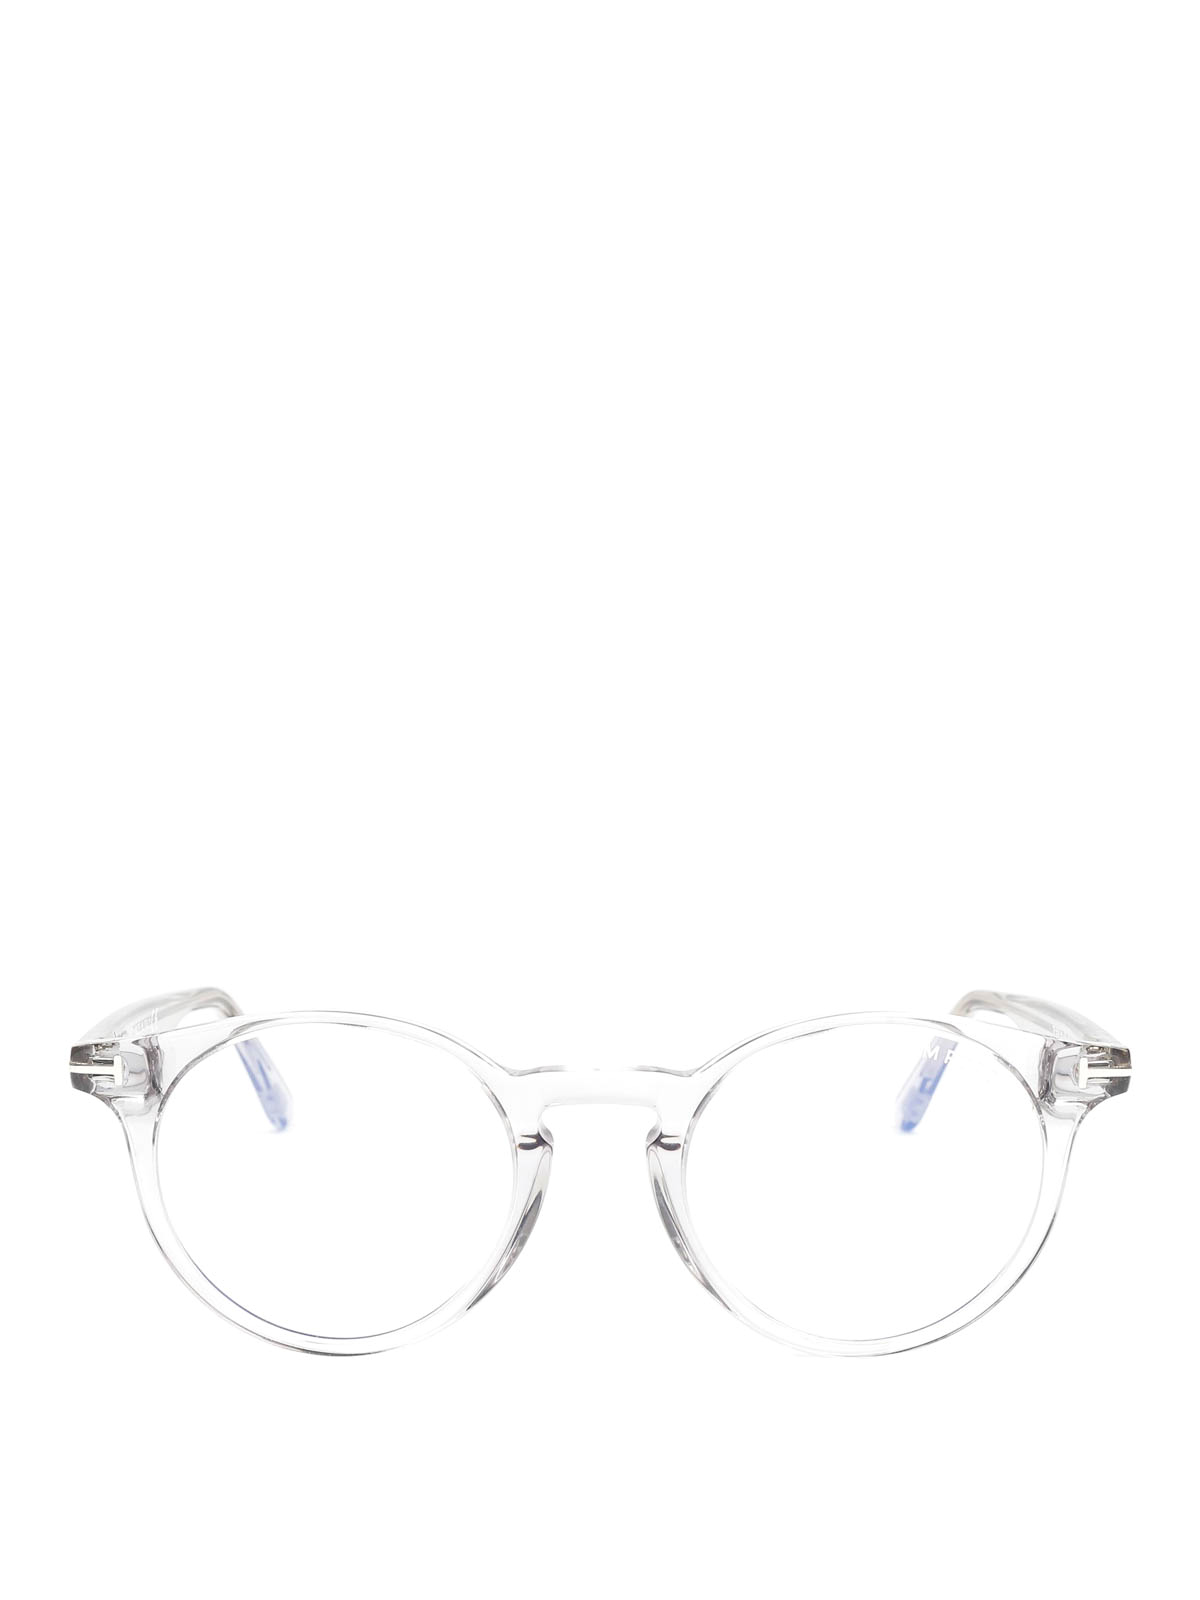 Glasses Tom Ford - Transparent round glasses - FT5557B020 